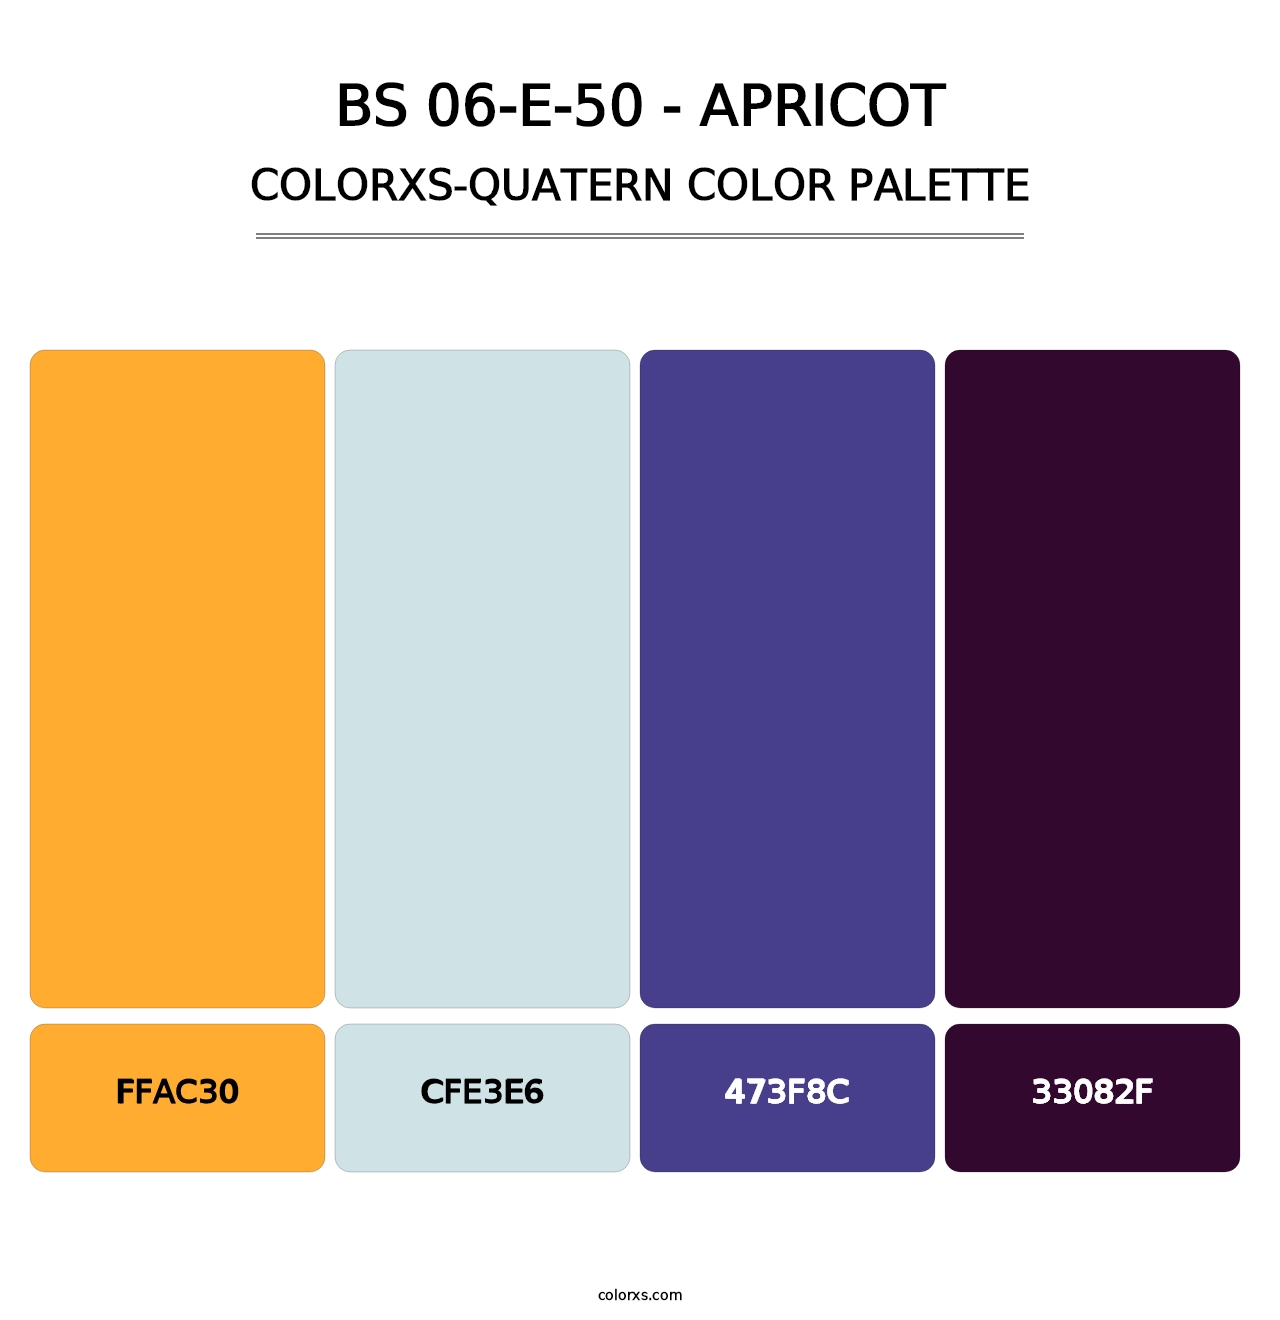 BS 06-E-50 - Apricot - Colorxs Quatern Palette